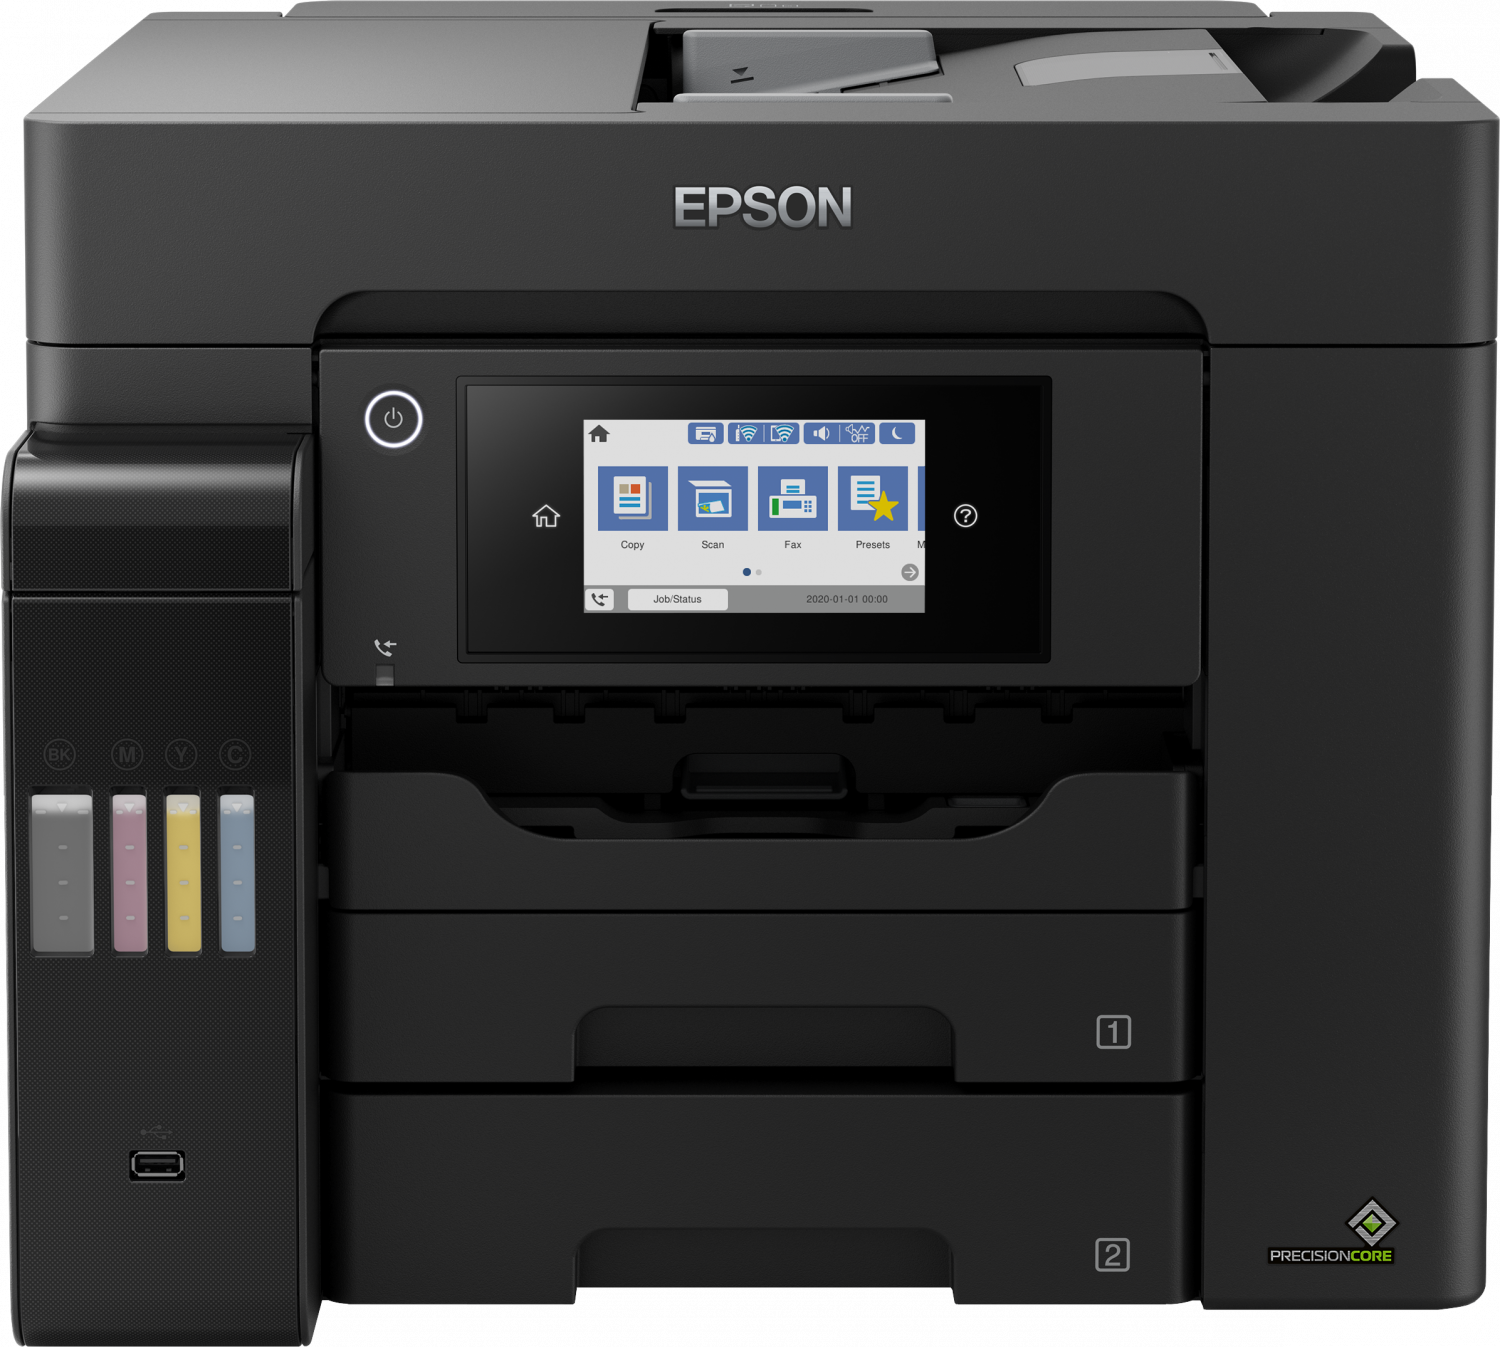 Epson/L6570/MF/Ink/A4/LAN/Wi-Fi Dir/USB